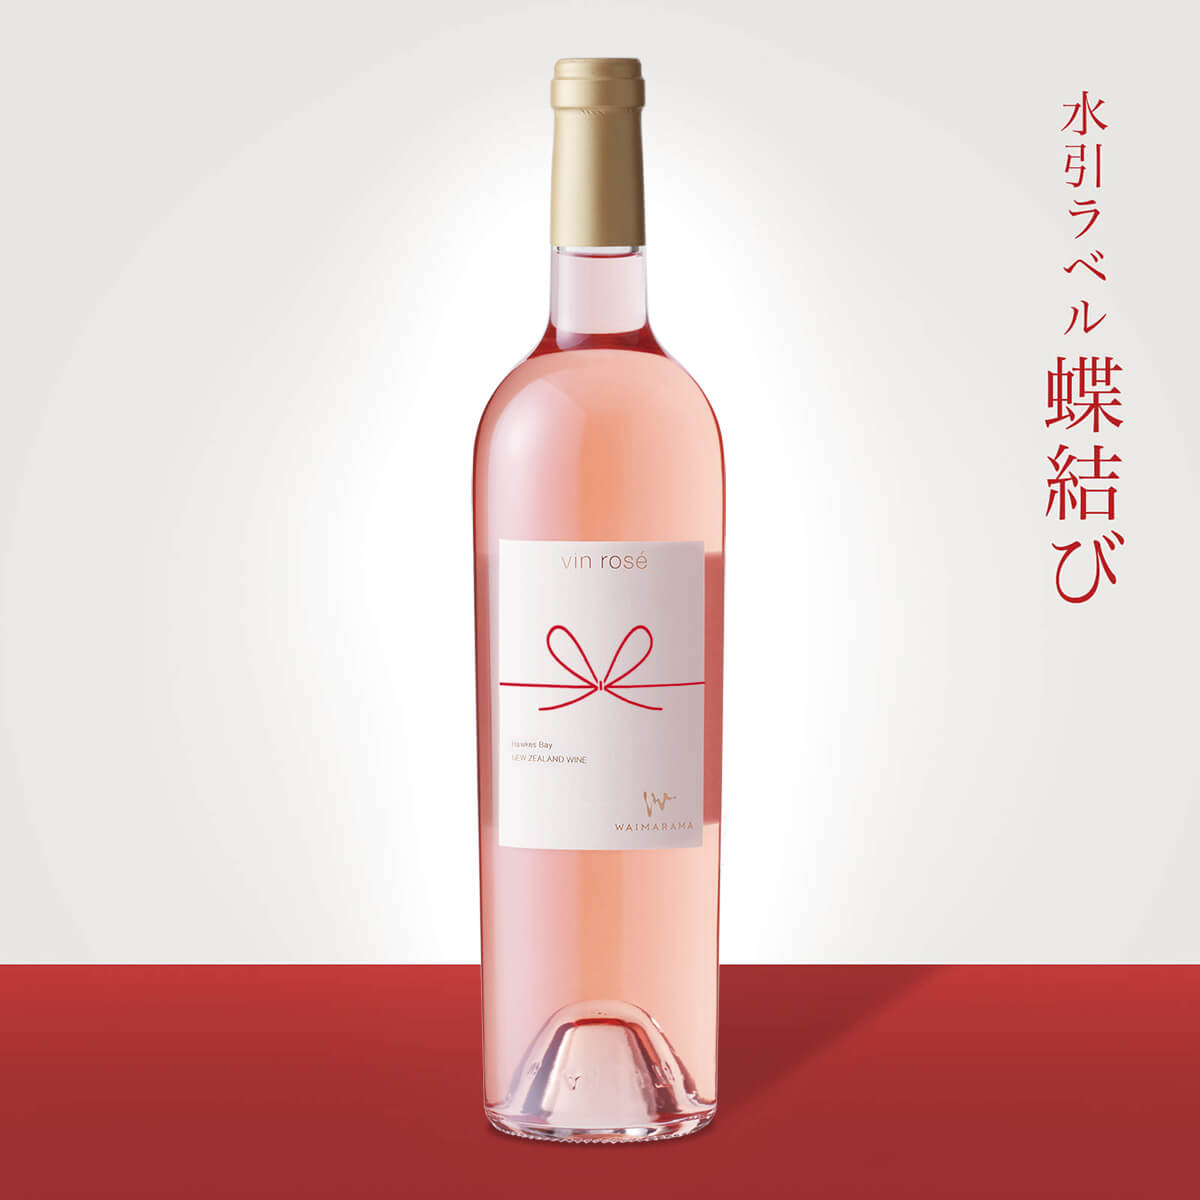 画像1: vin rose 2019 750ml【蝶結び】 (1)